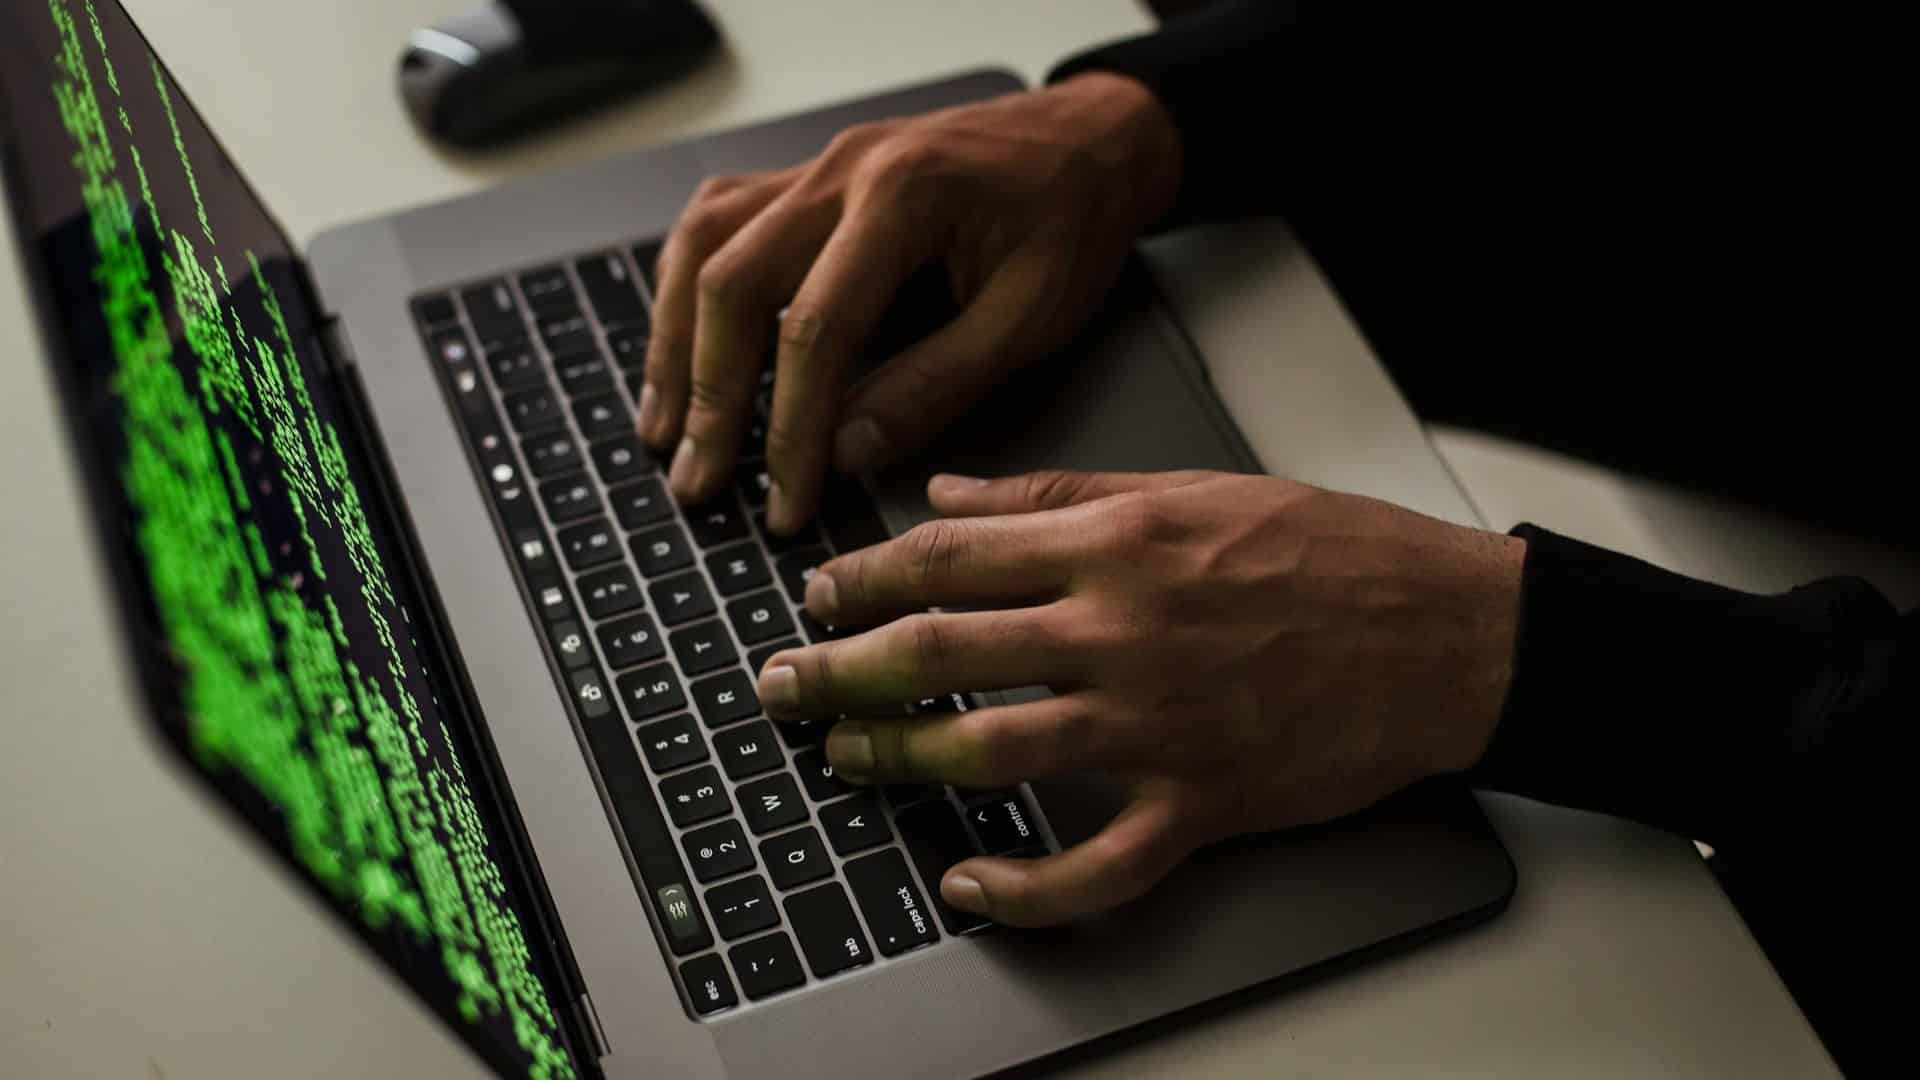 Zadarska policija bilježi porast internetskih prijevara putem lažnih web stranica